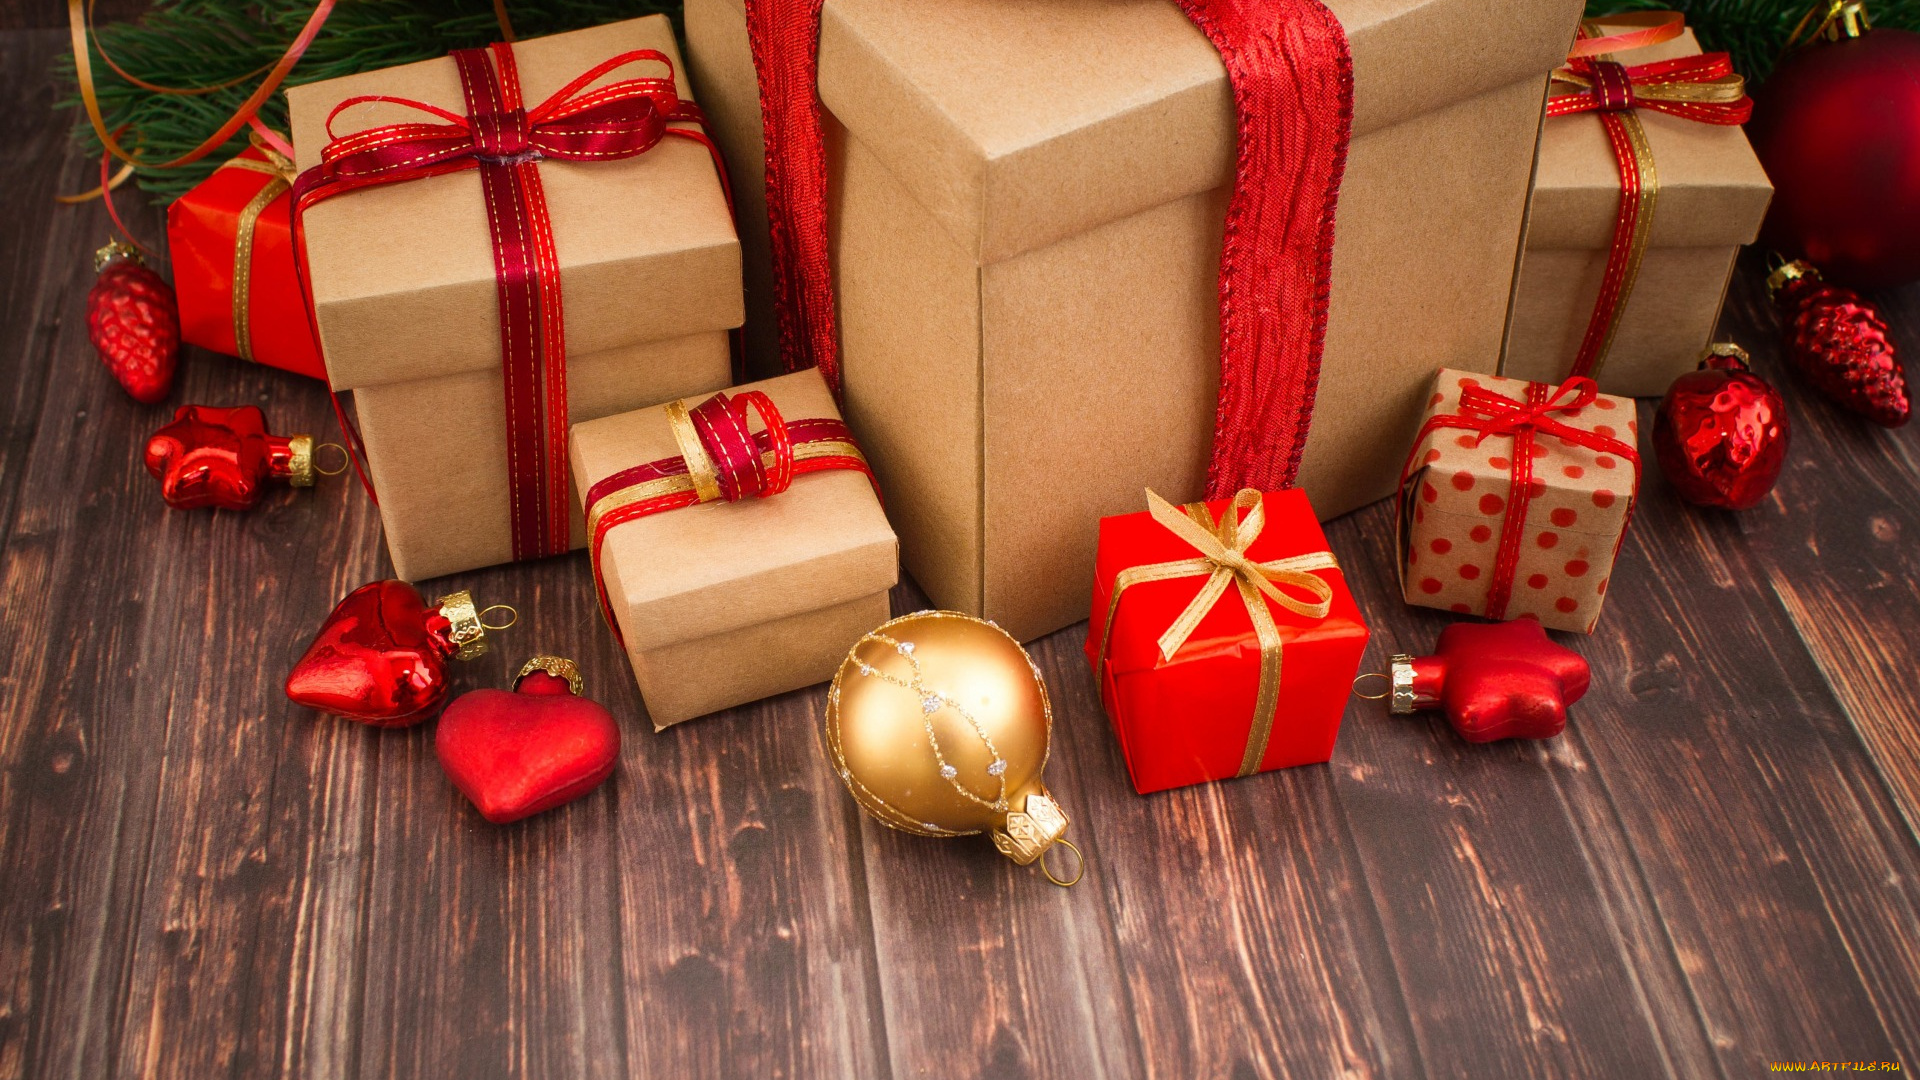 праздничные, подарки, и, коробочки, new, year, happy, игрушки, holiday, celebration, рождество, gifts, wood, merry, christmas, подарки, новый, год, украшения, decoration